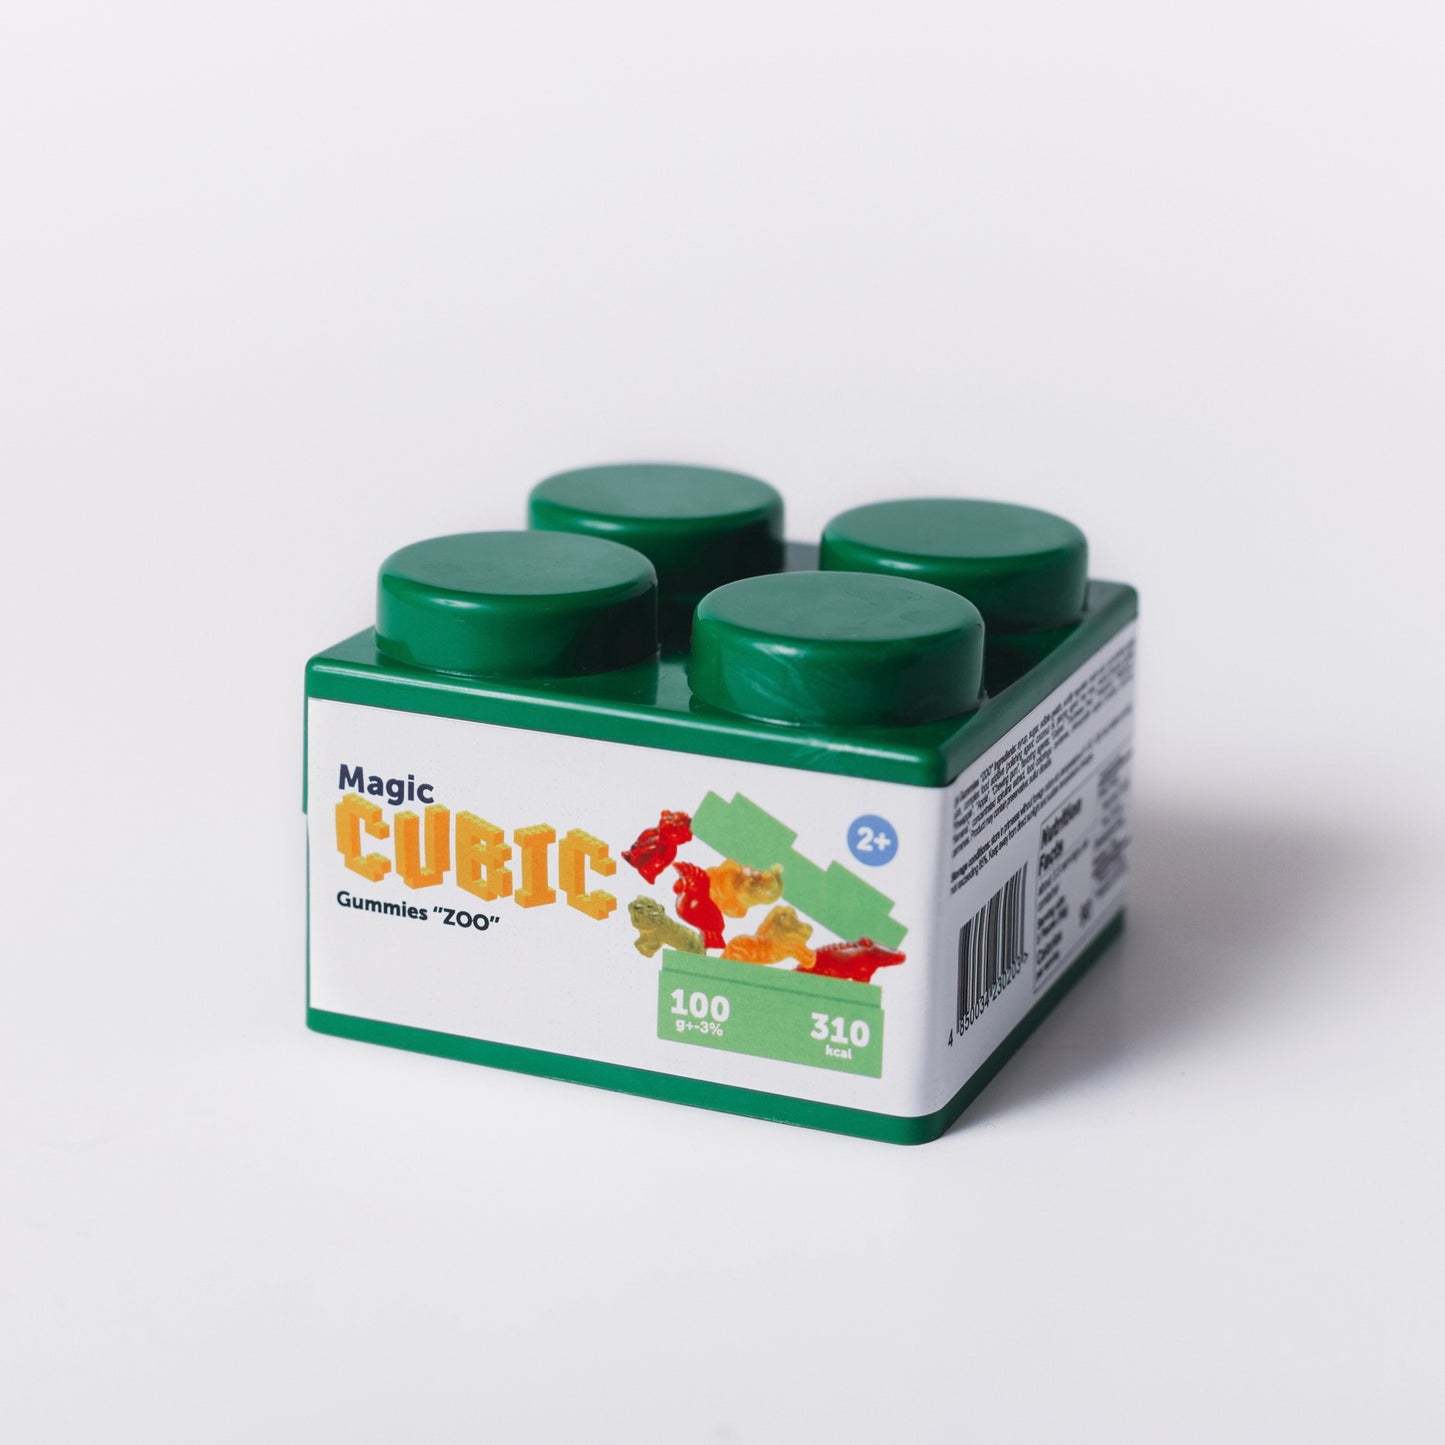 Magic CUBIC Green “ZOO” Gummies, 3.5 OZ